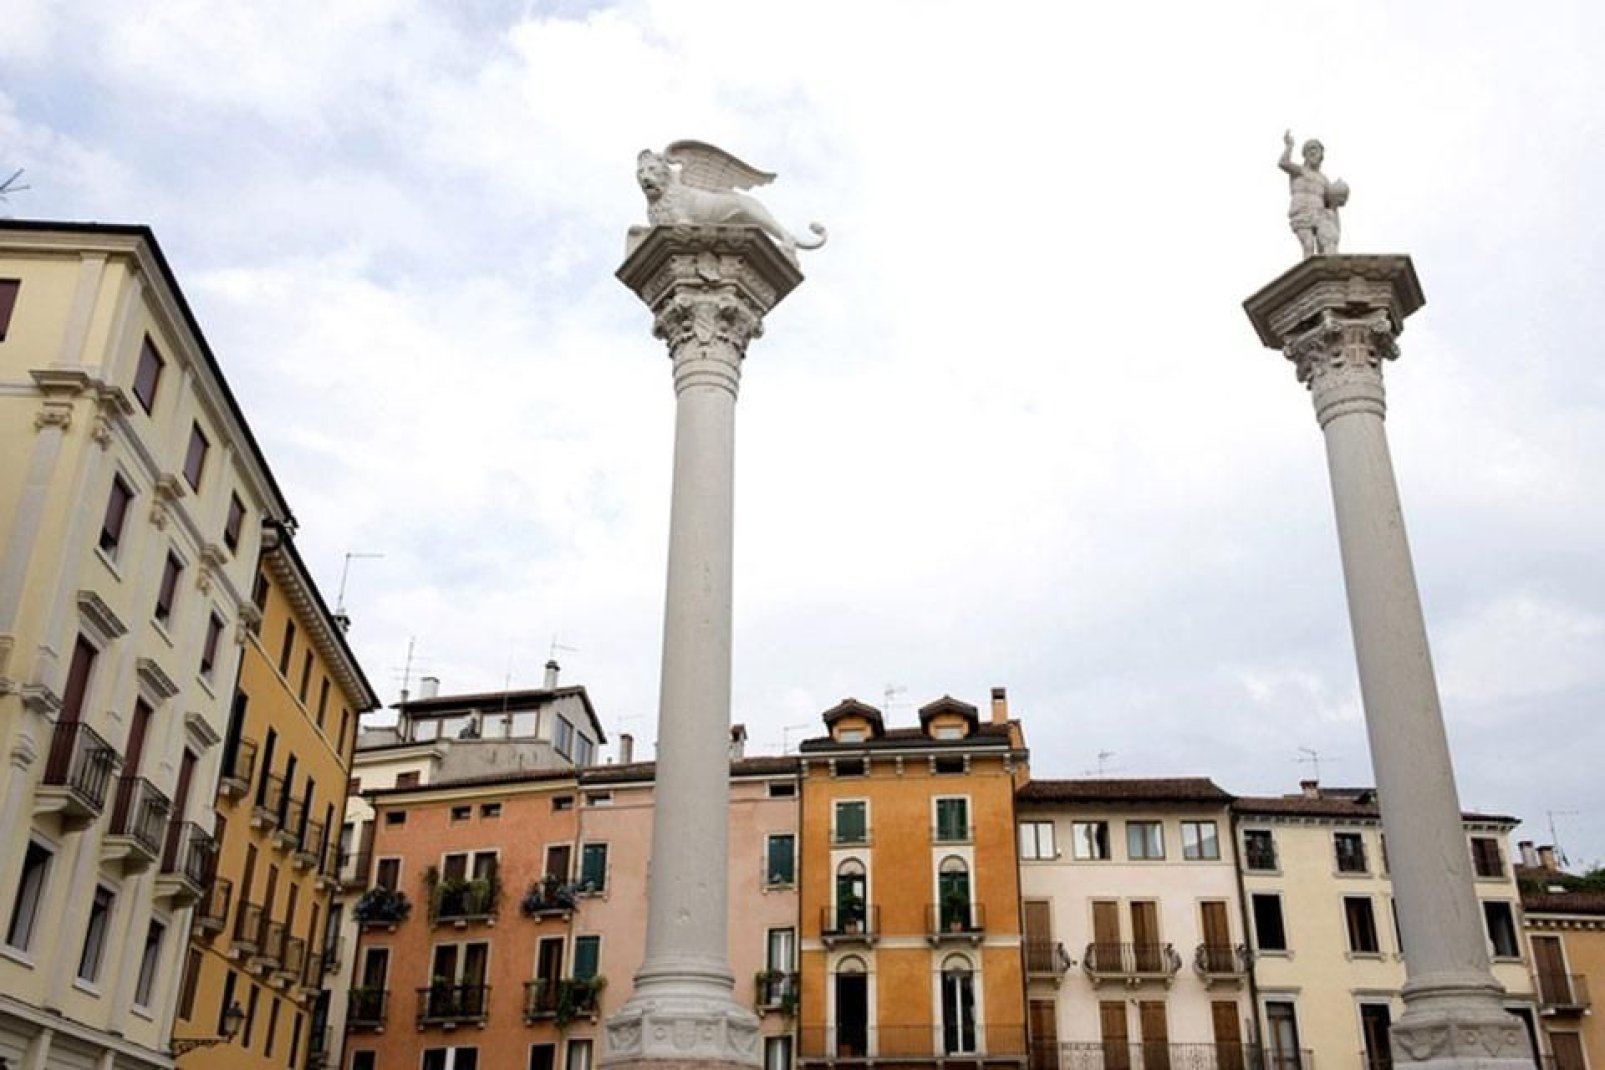 Détail de la Piazza dei Signori à Vicence, où dominent deux colonnes, l'une avec le Lion de Saint-Marc, l'autre avec le Rédempteur.